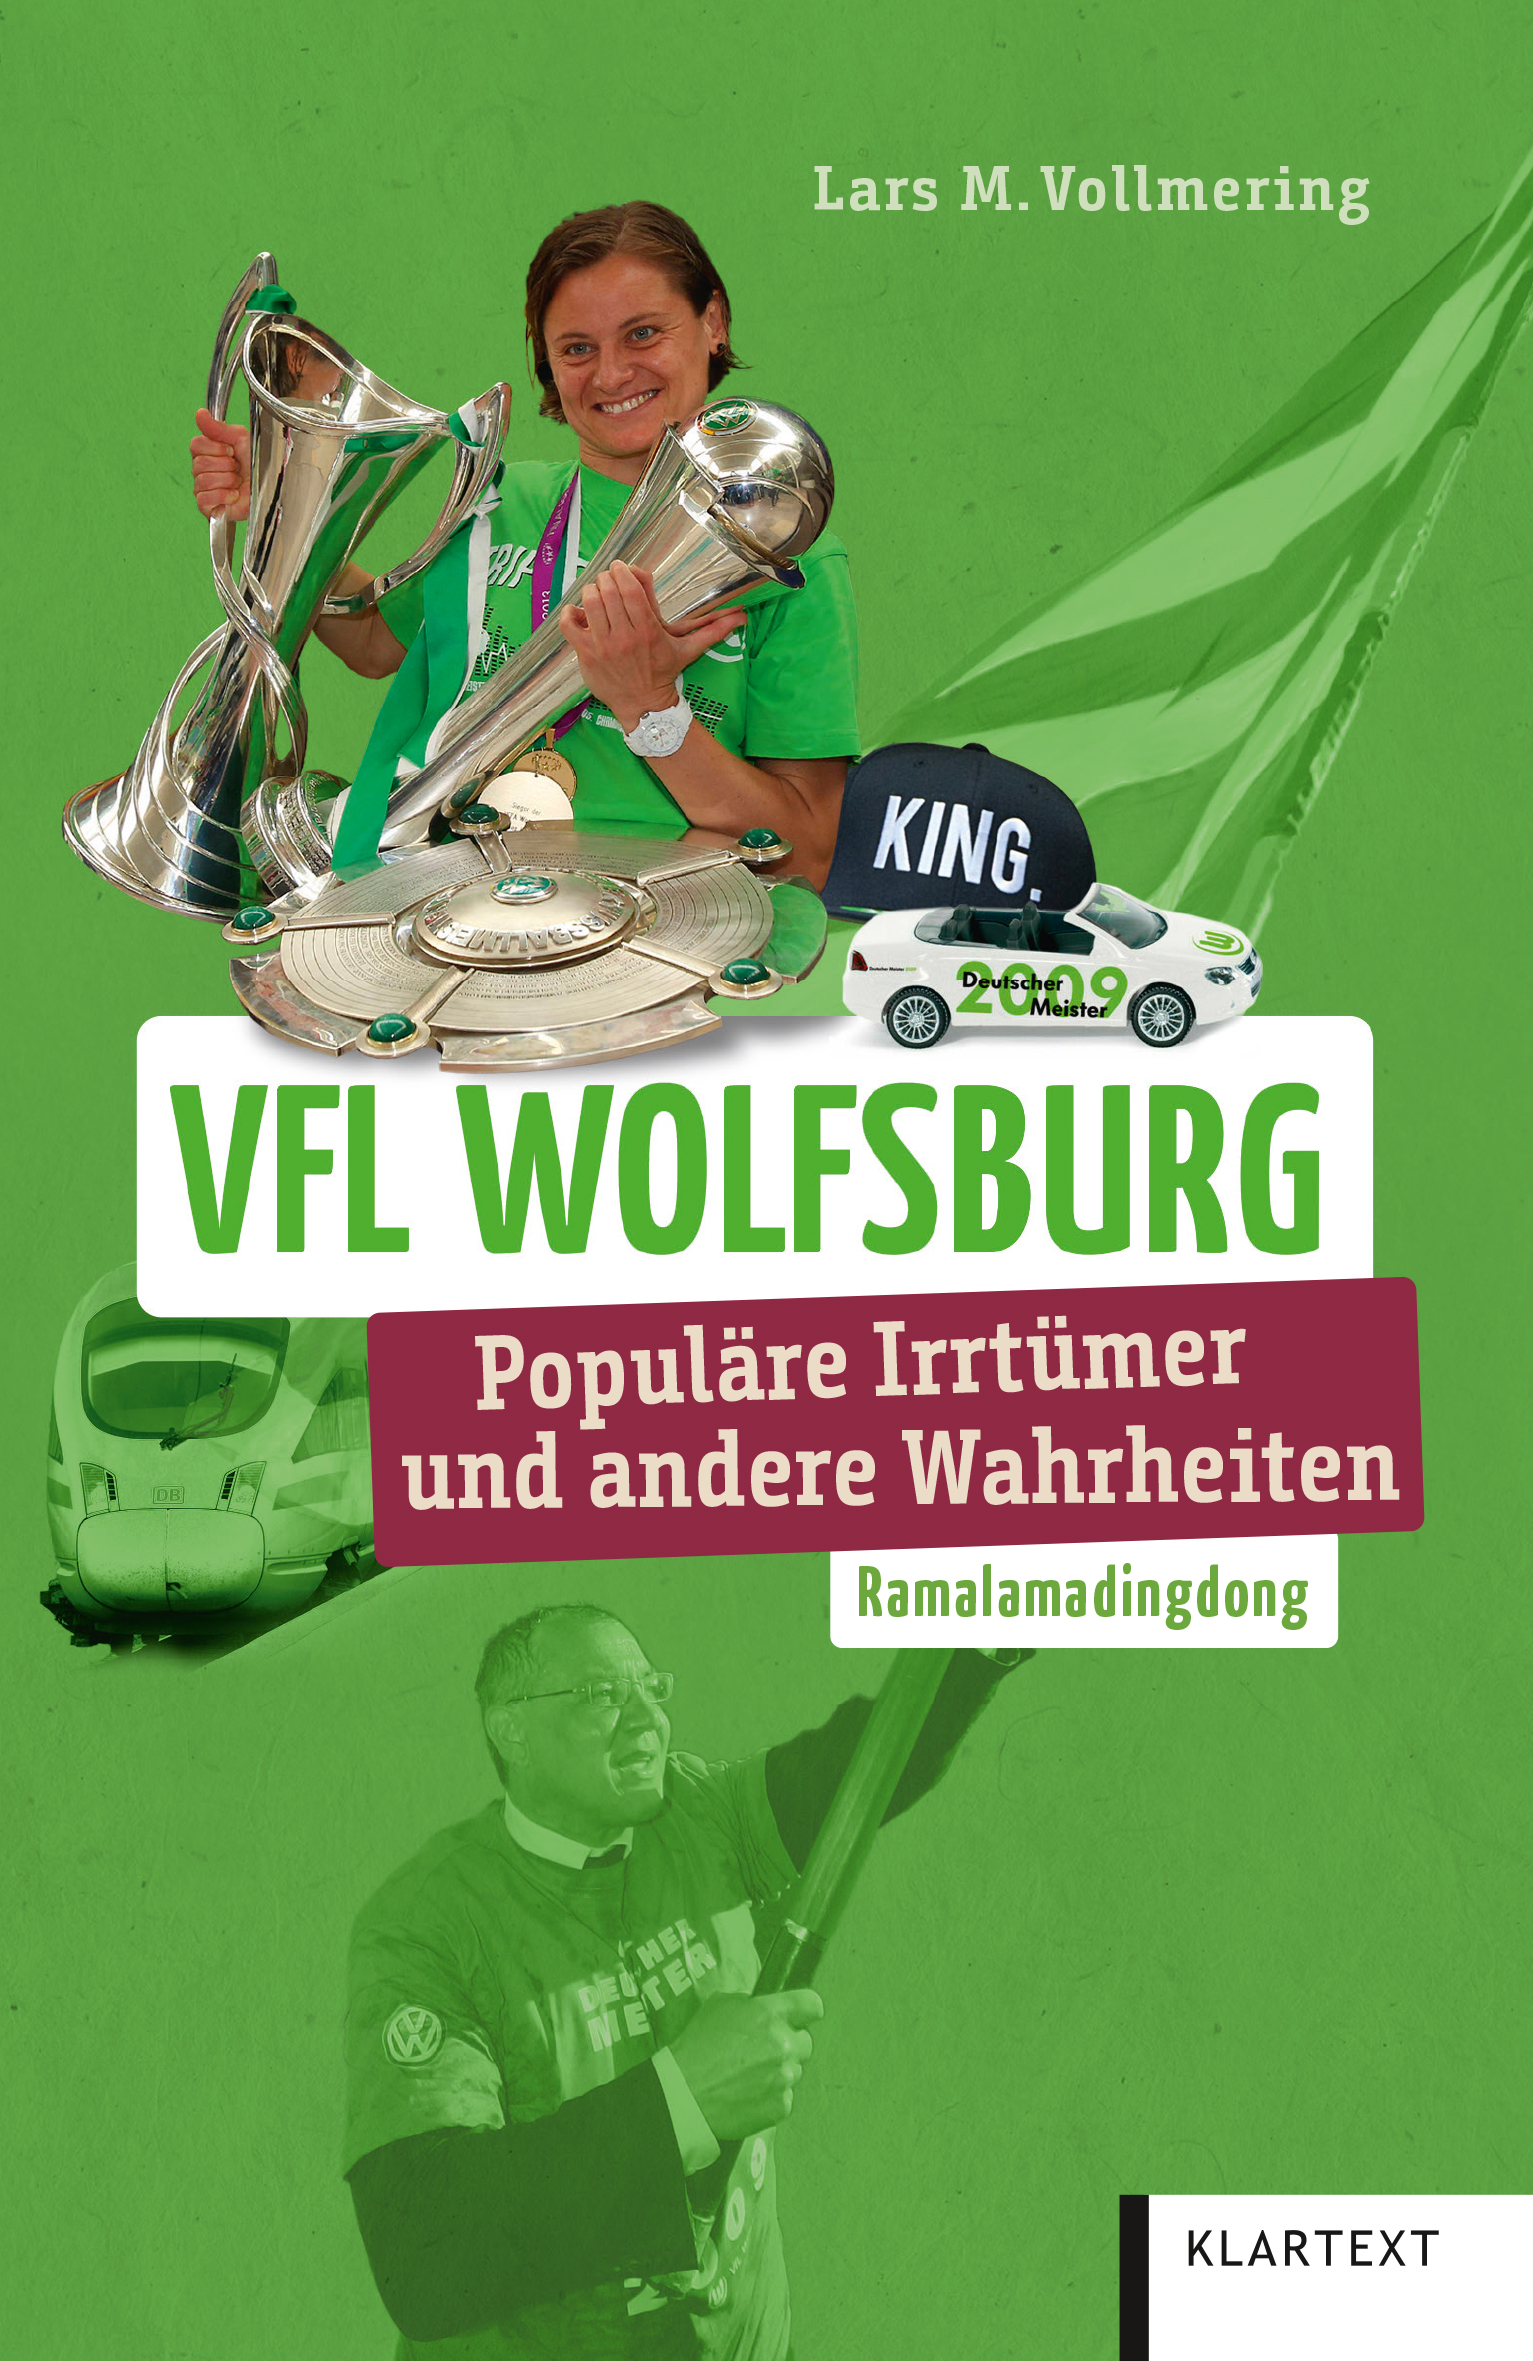 Das Bild zeigt das Cover des Buchs "VfL Wolfsburg - Populäre Irrtümer und andere Wahrheiten" von Lars M. Vollmering..